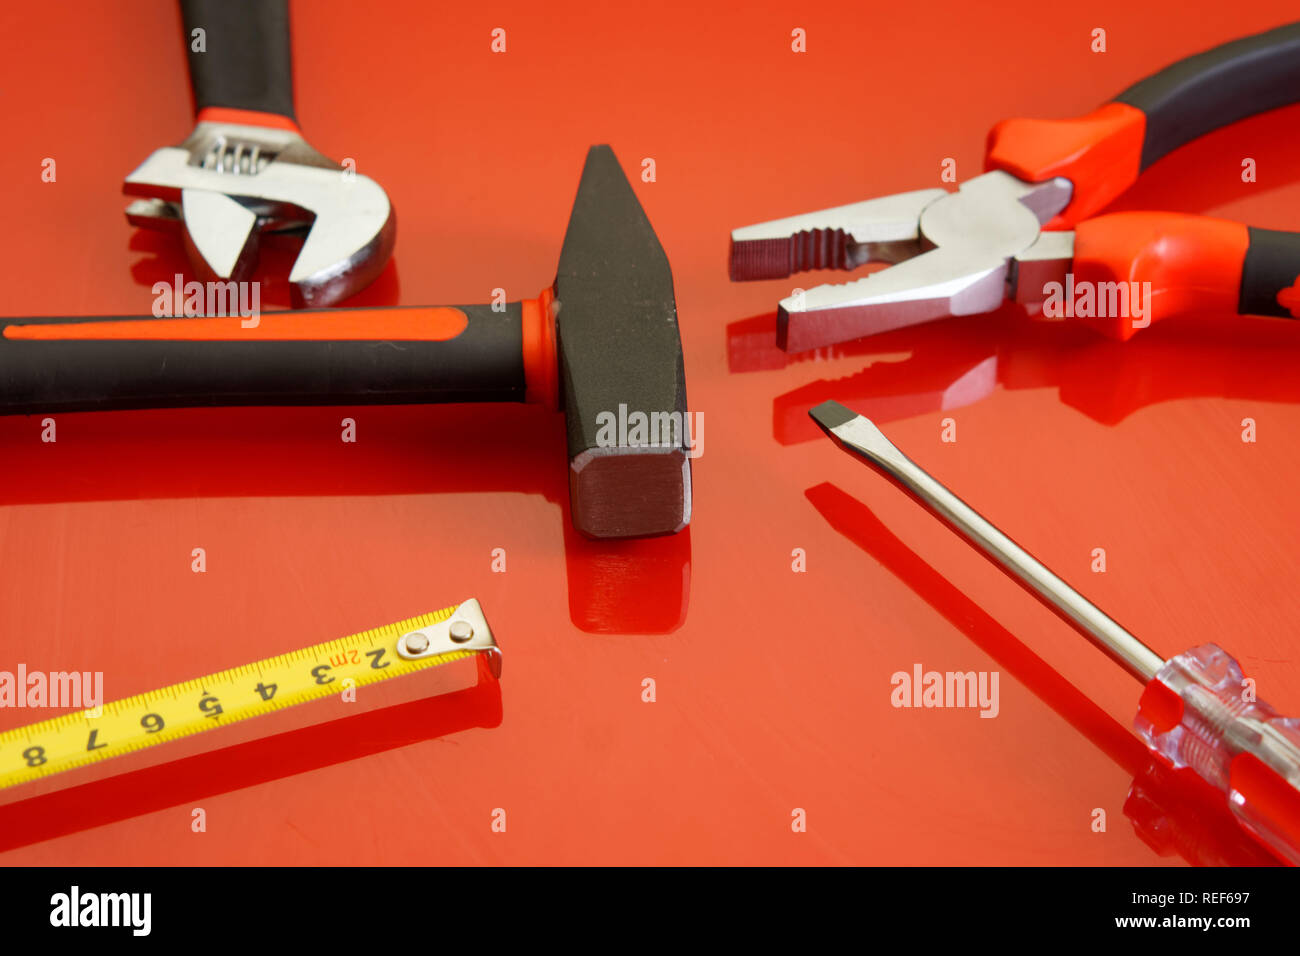 Zangen, Maßband, Schraubendreher, Hammer und verstellbarer Schraubenschlüssel liegen auf einem roten polierte Oberfläche. Werkzeuge für die Mechaniker. Stockfoto